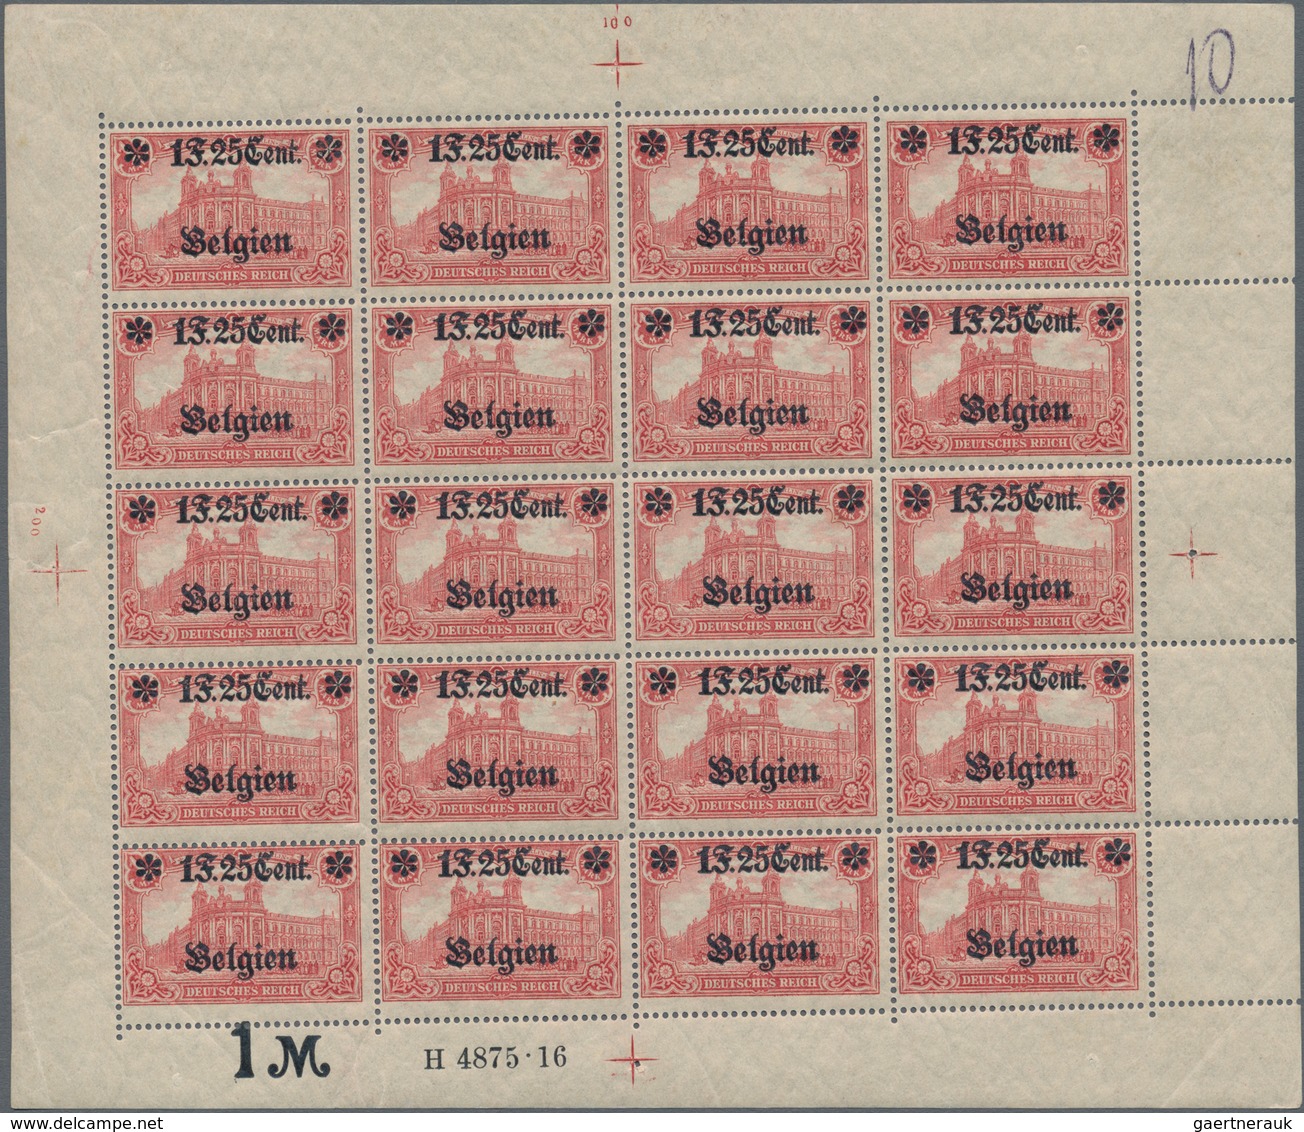 Deutsche Besetzung I. WK: Landespost In Belgien: 1916, 1 F. 25 Cent Auf 1 Mark Karminrot, Wertangabe - Occupation 1914-18